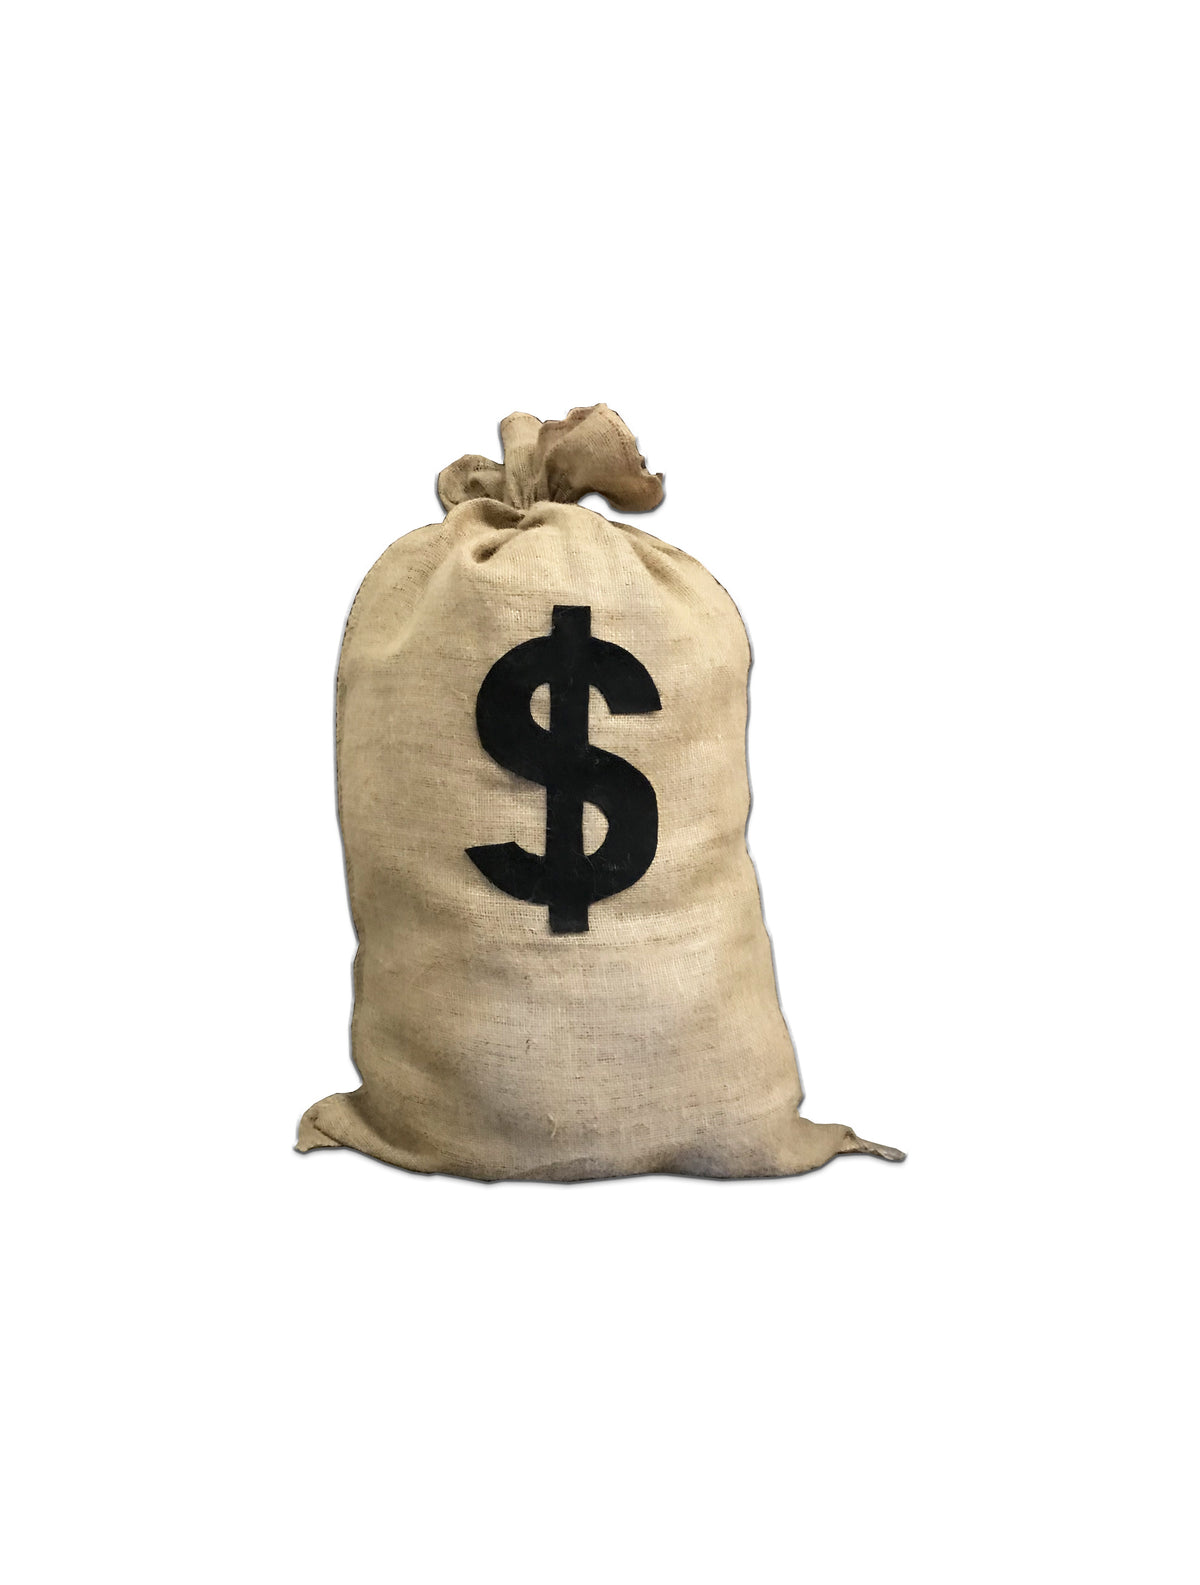 Cash Transmittal Bags | Cash Bags & Bank Bags | Deposit Bags